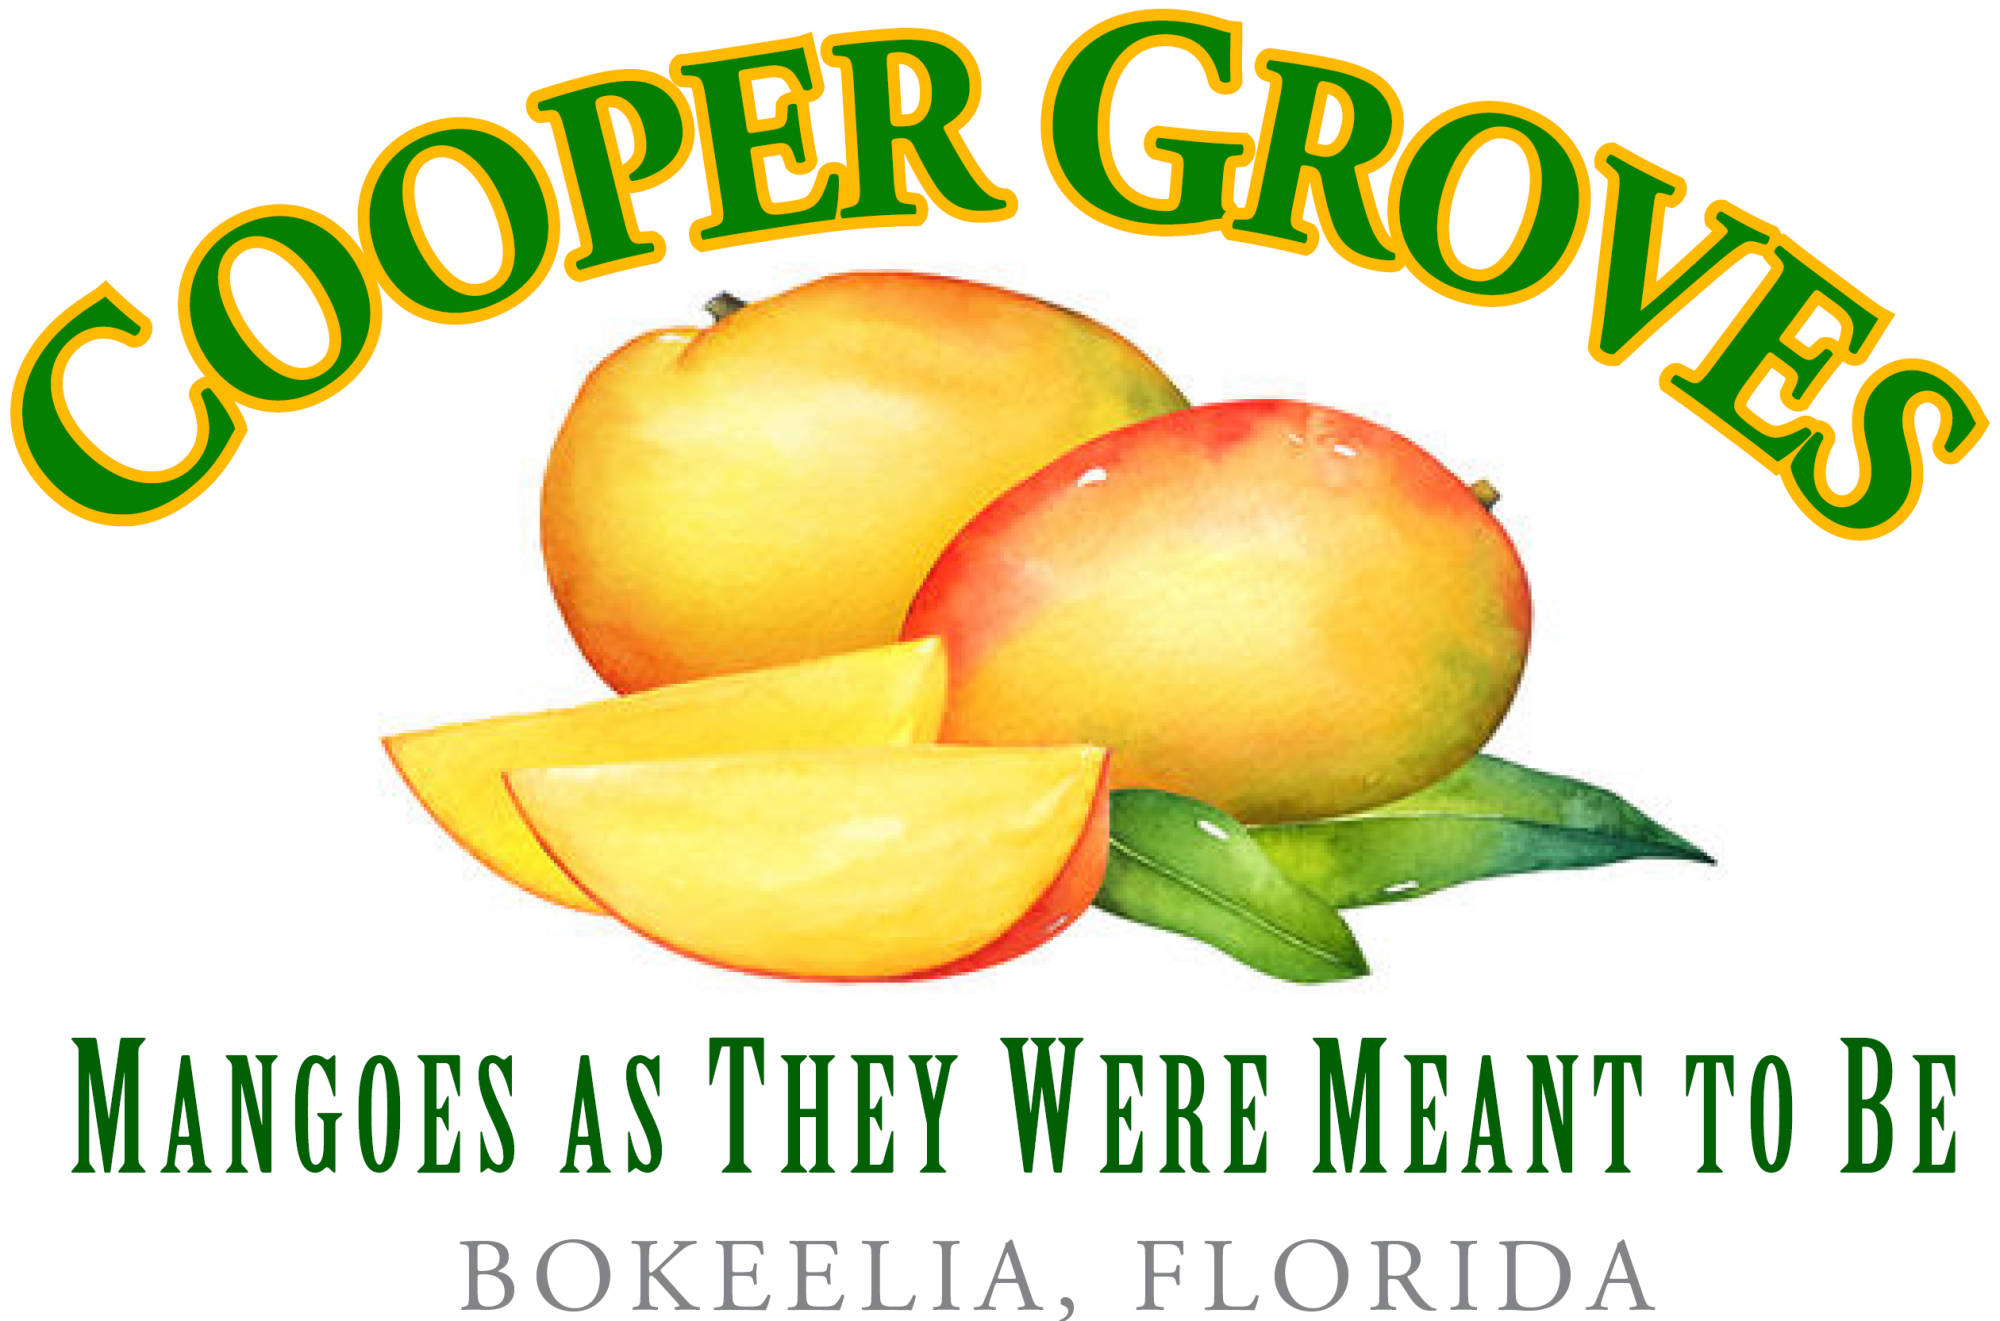 Cooper Groves Logo Design